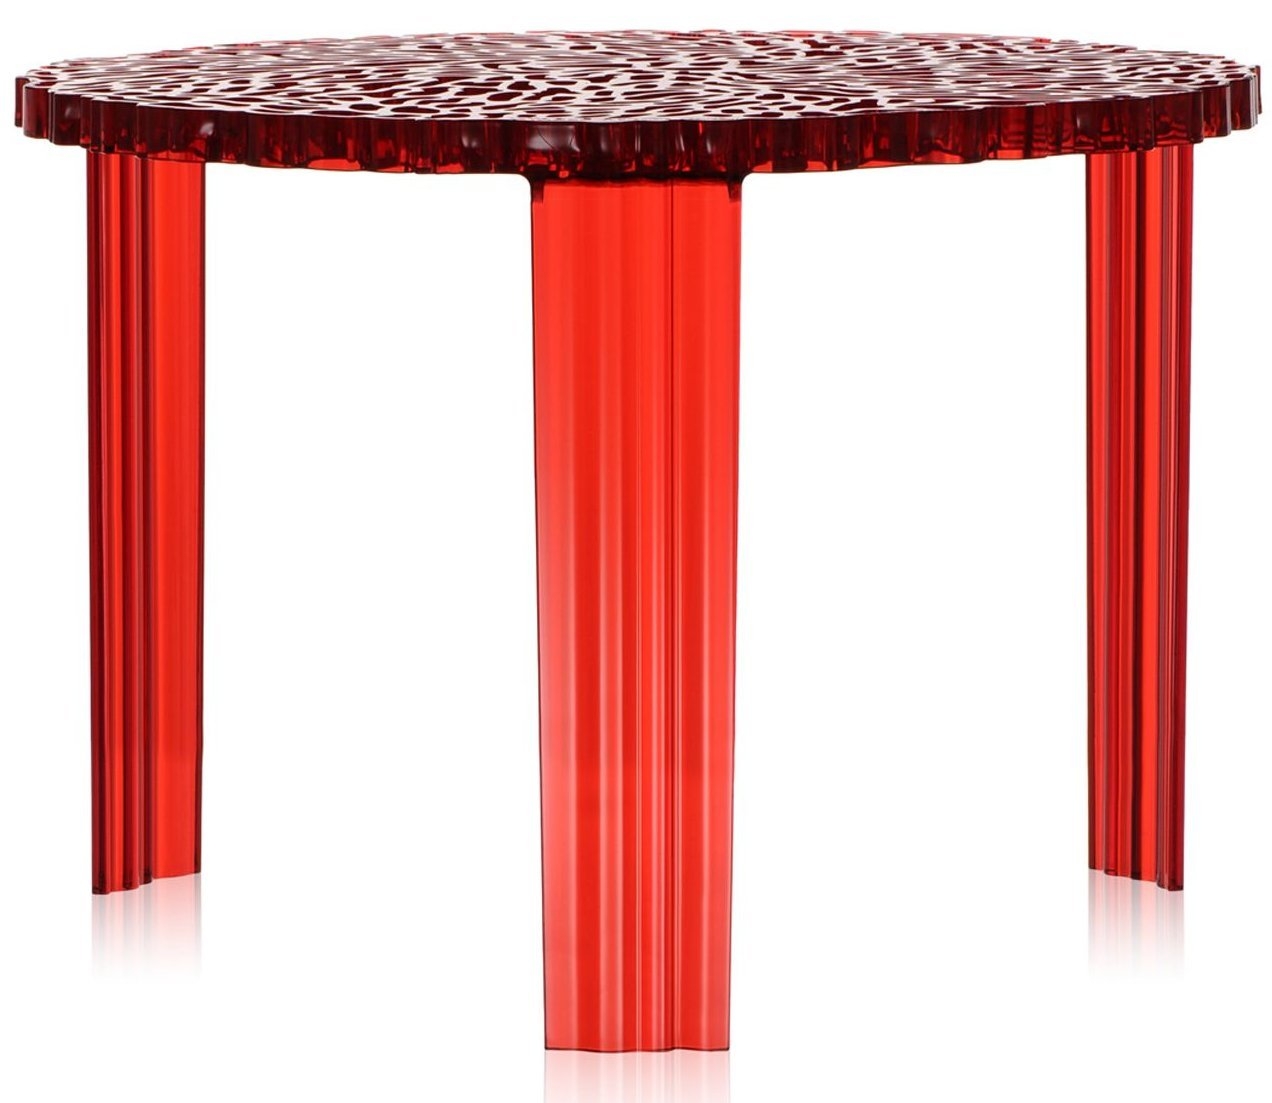 Masuta Kartell T-Table design Patricia Urquiola 50cm h 36cm rosu transparent